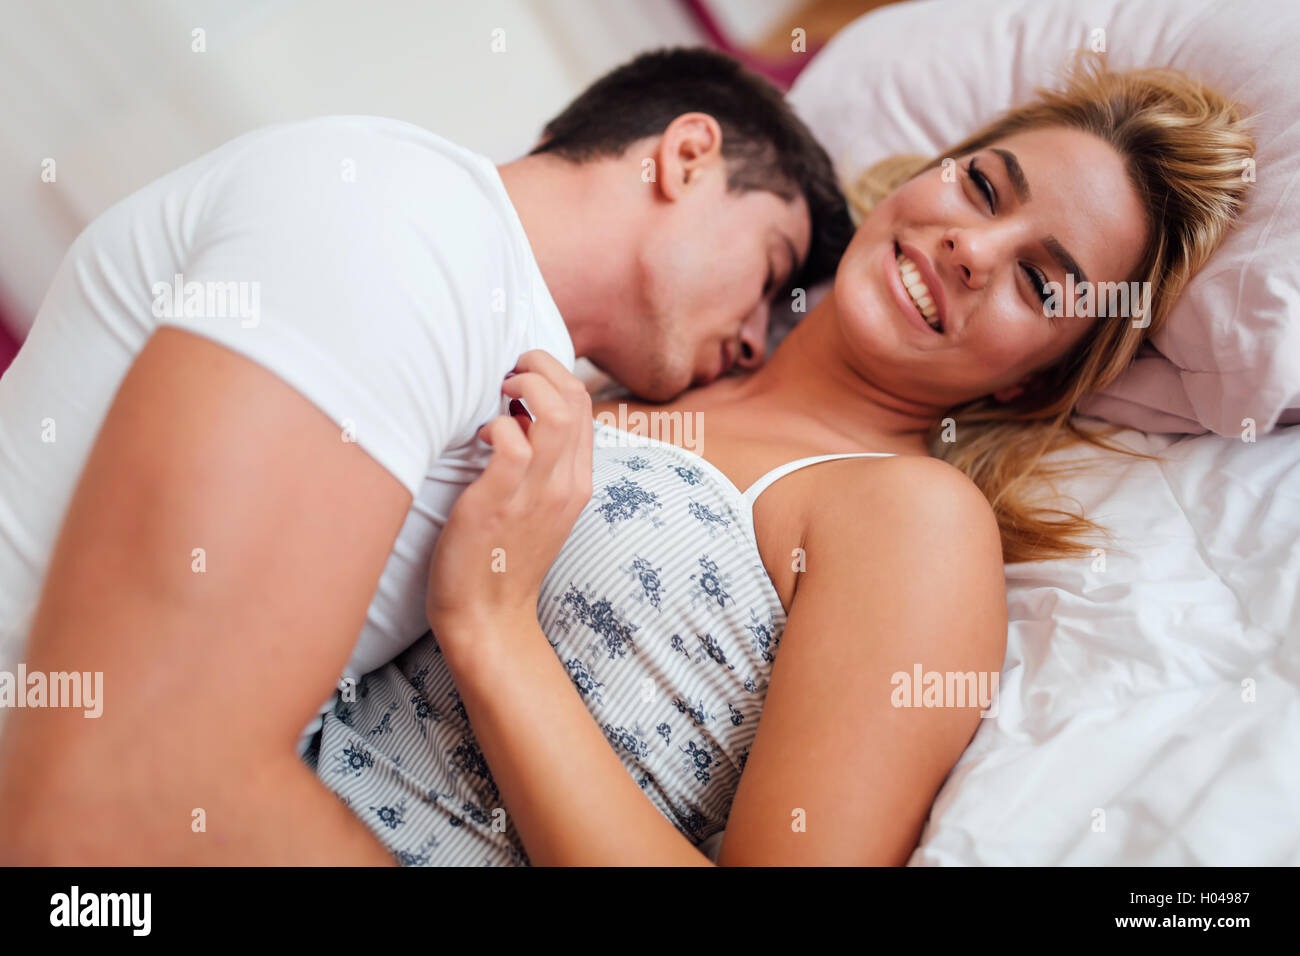 Beau couple amoureux au lit étant sensuelle Photo Stock - Alamy